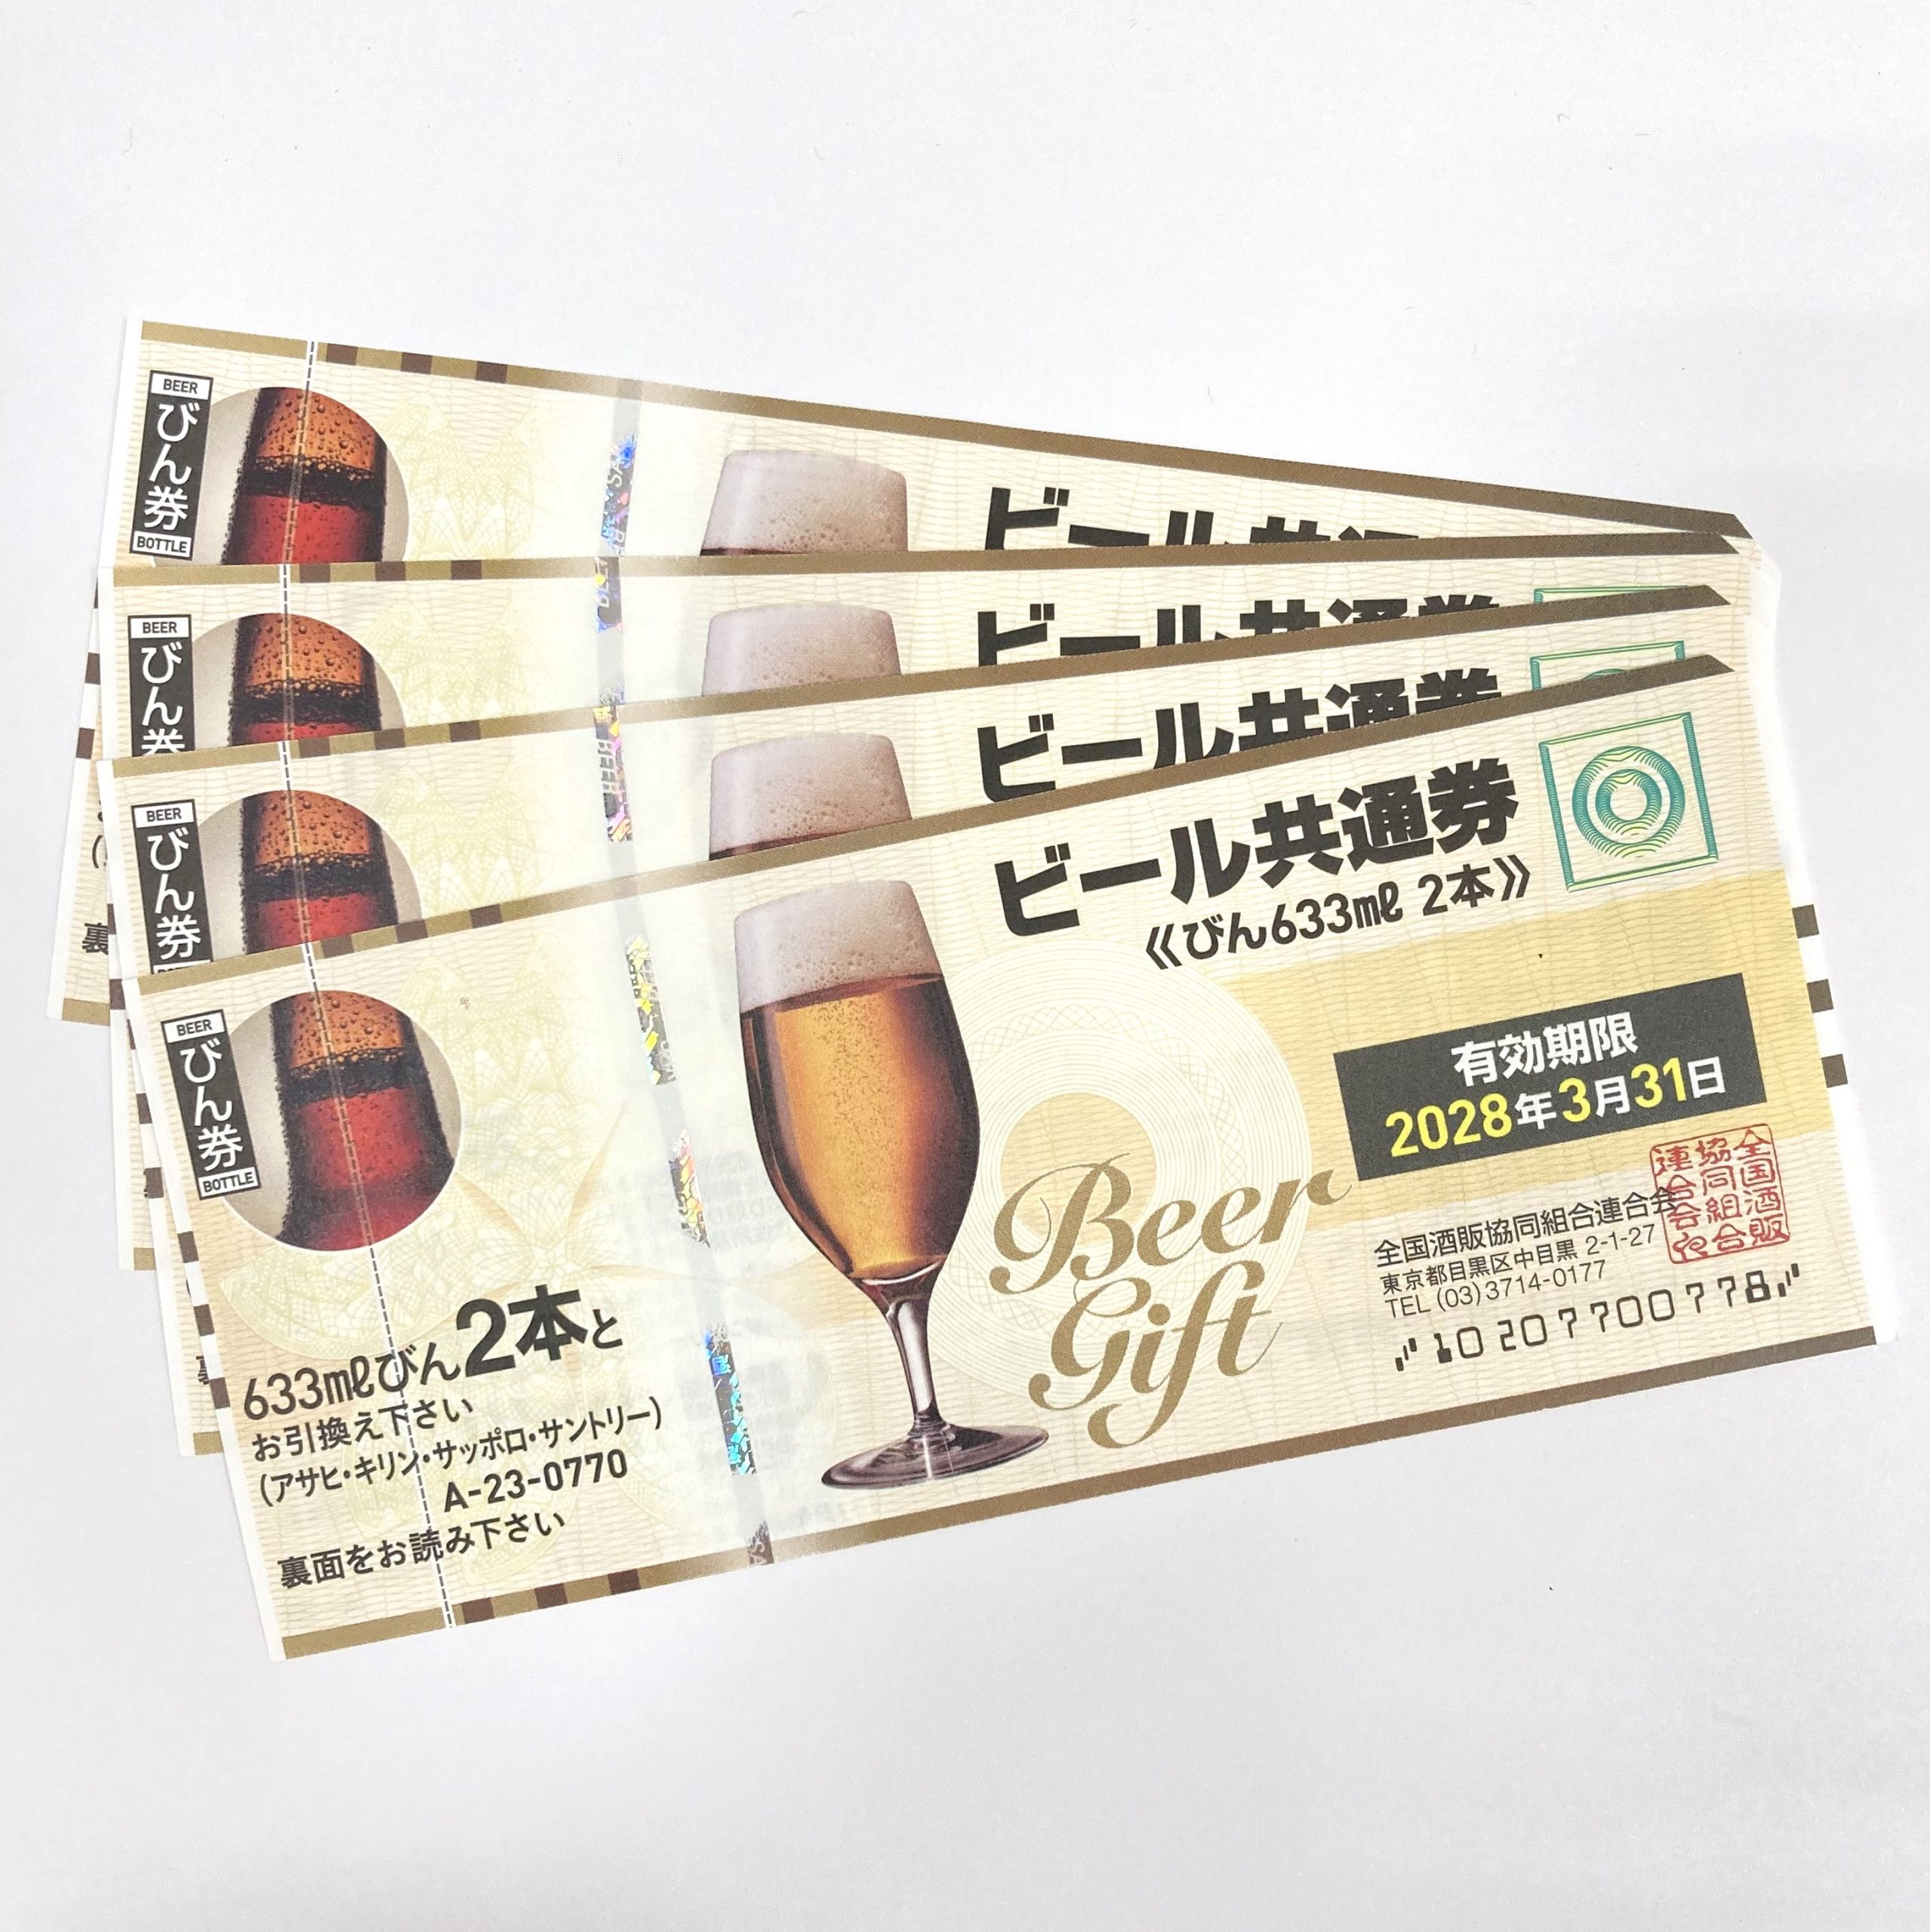 ビール共通券 770円 